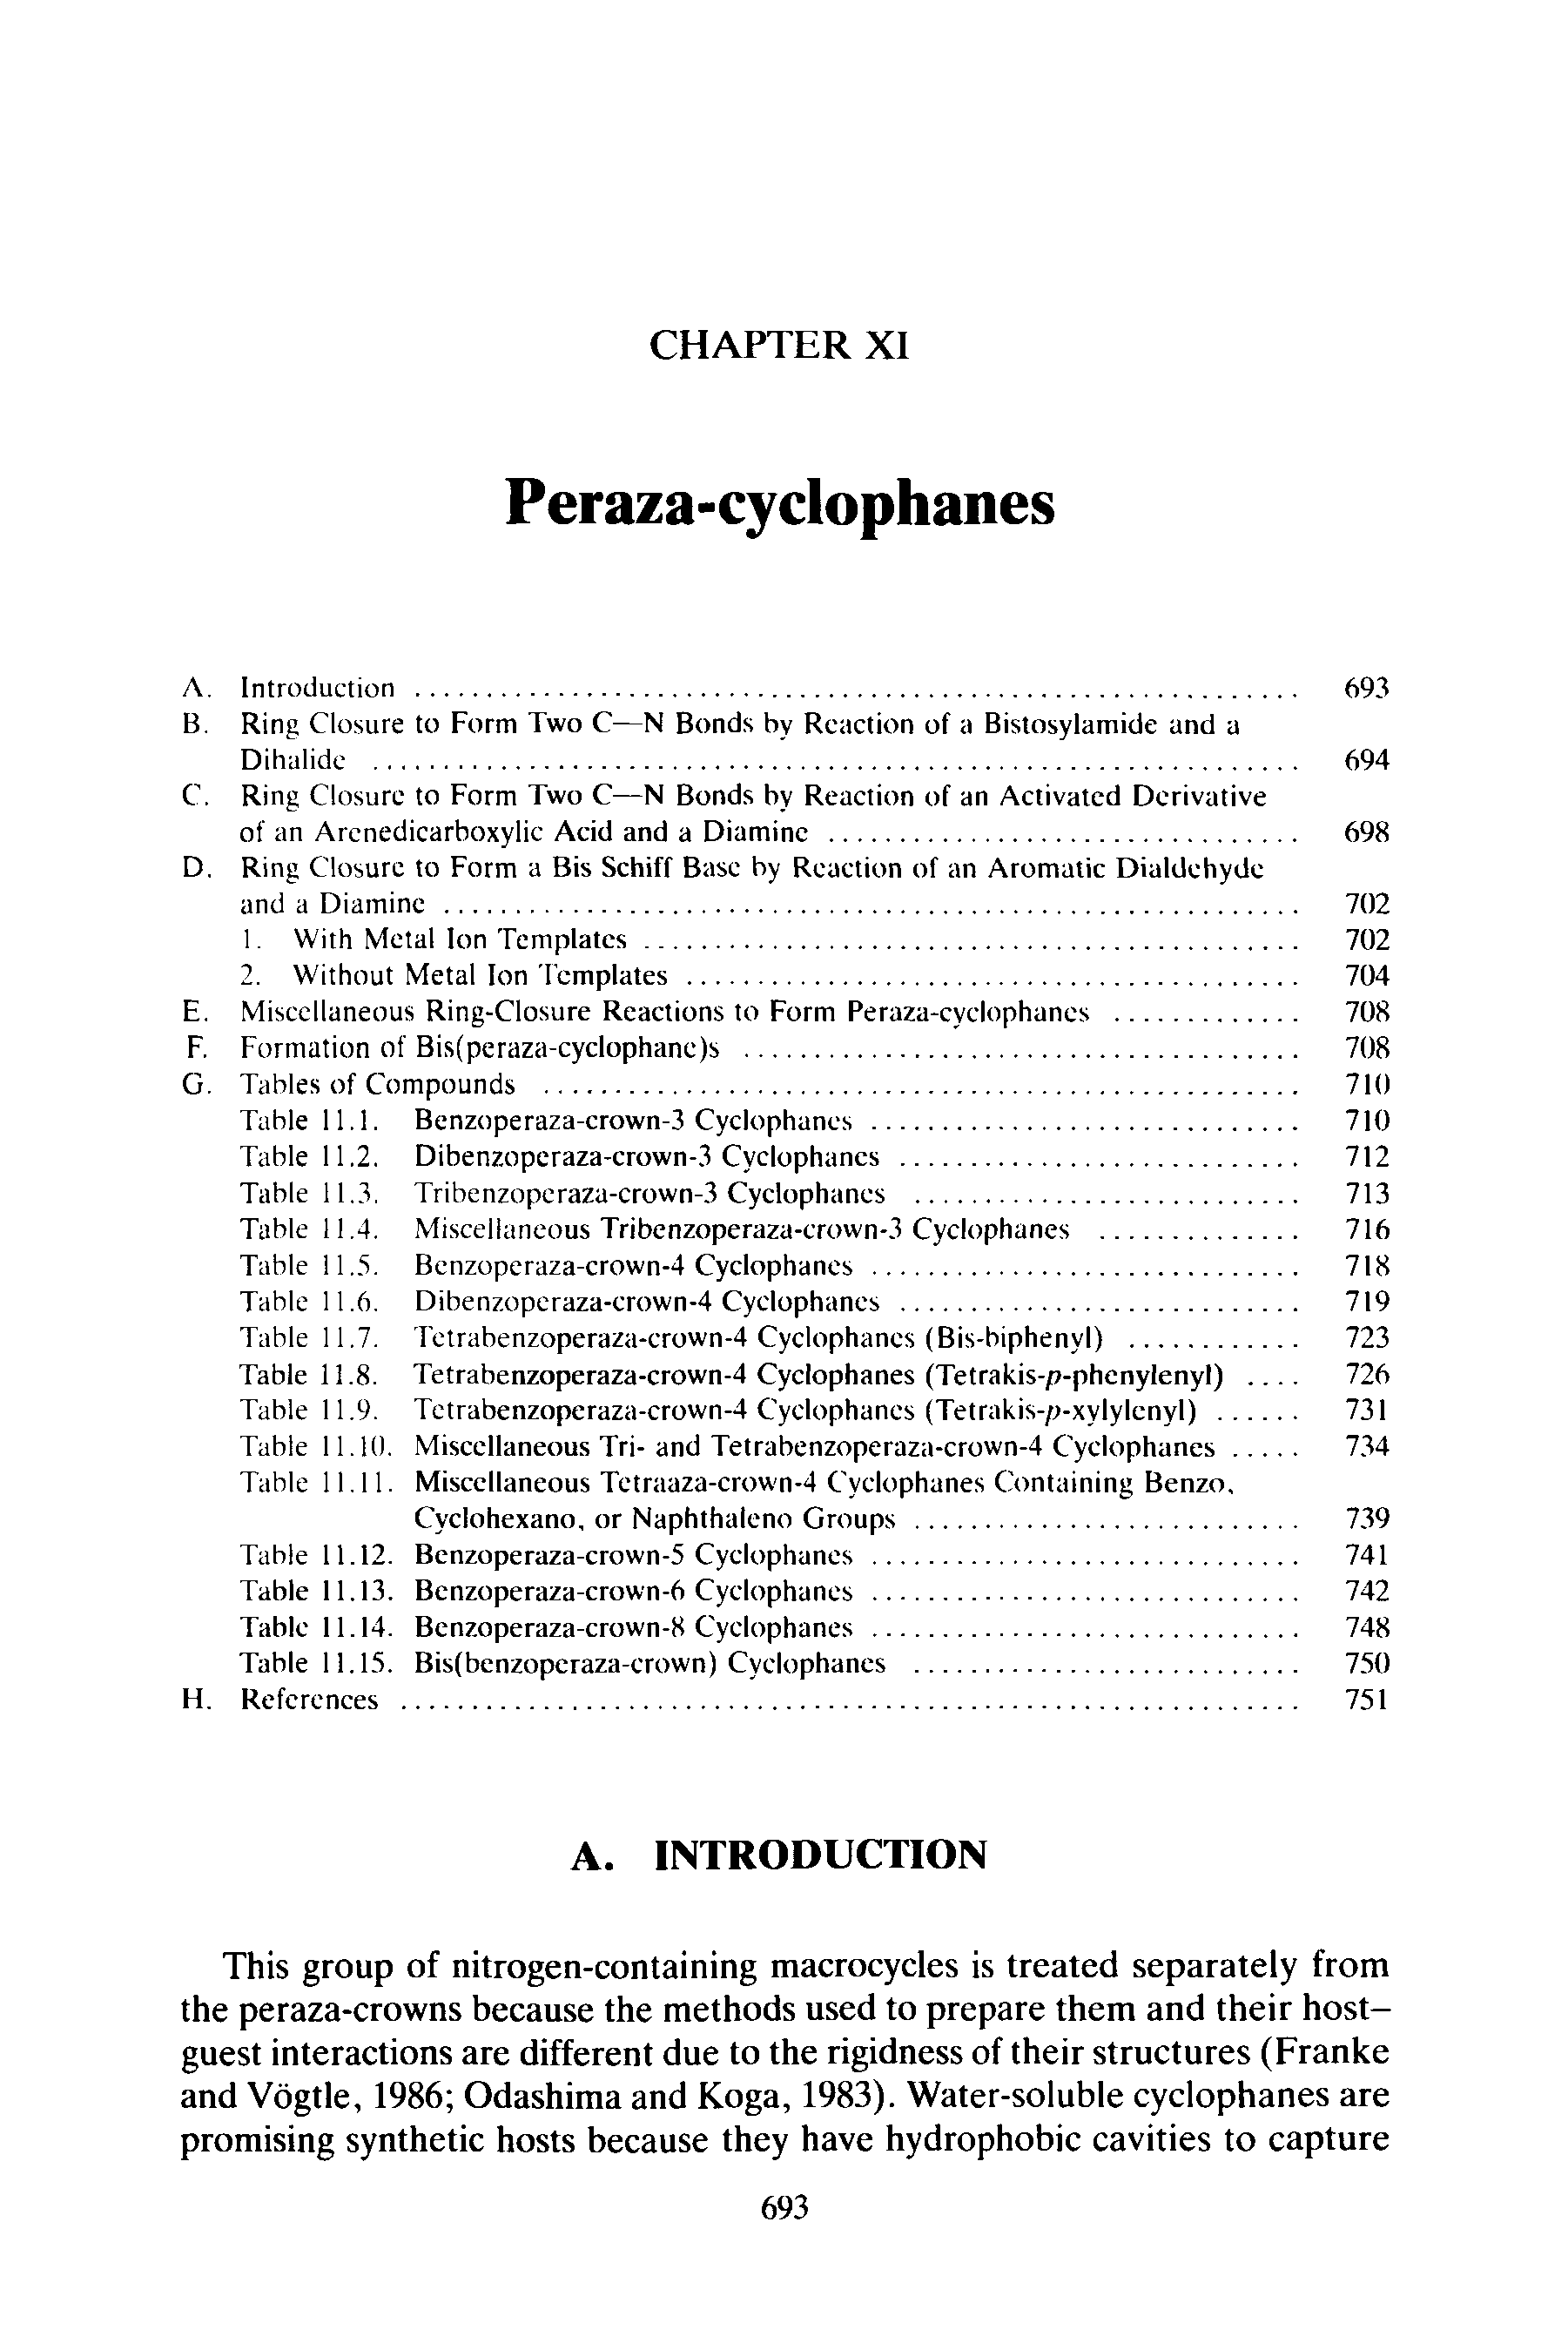 Table 11.11. Miscellaneous Tetraaza-crown-4 Cyclophanes Containing Benzo,...